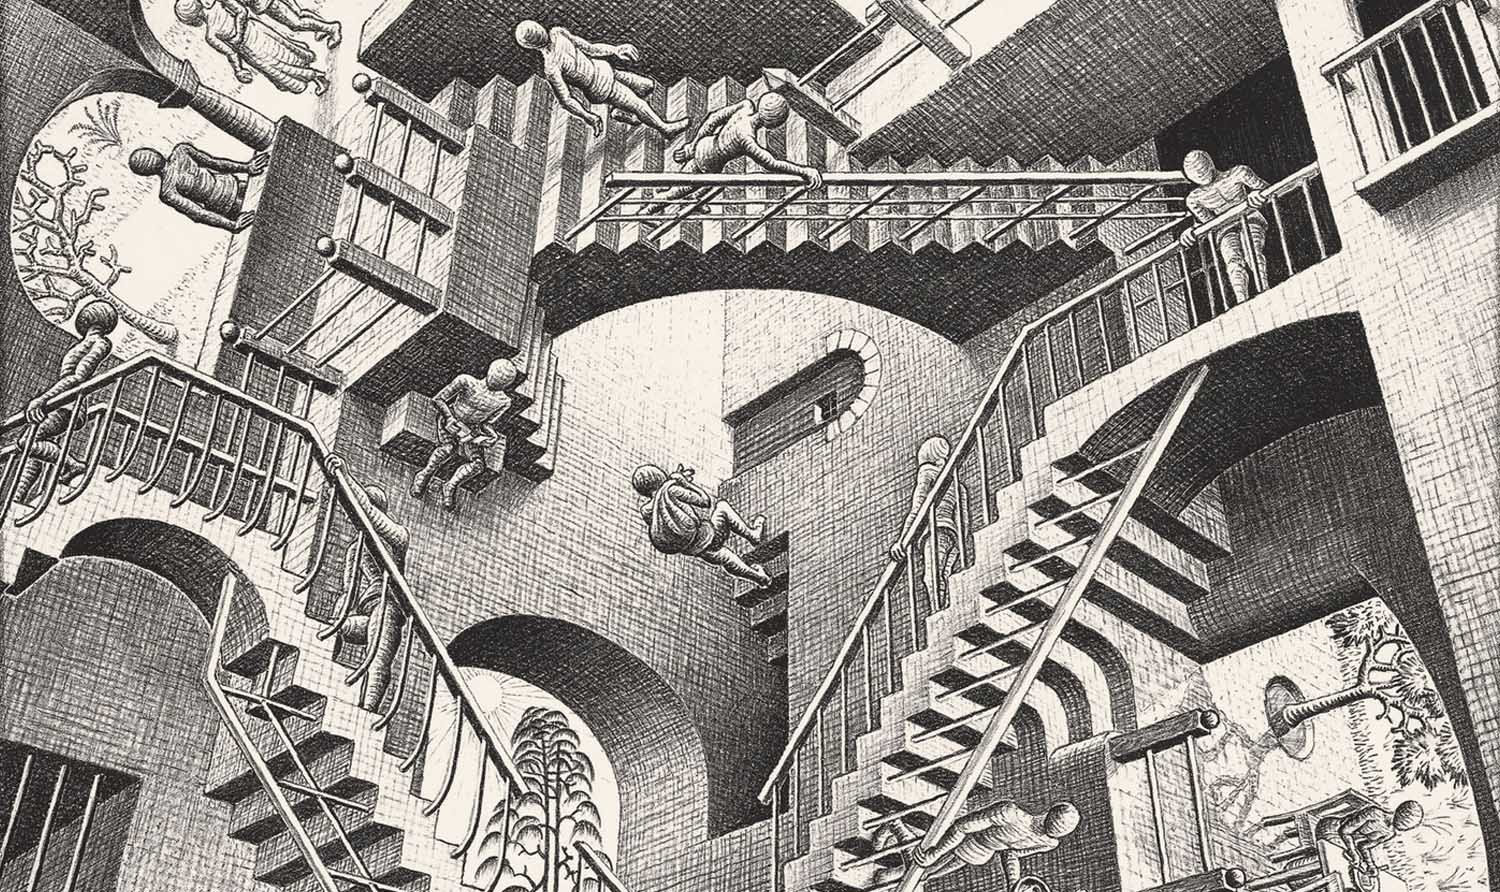 M.C. Escher, Relatività, 1953